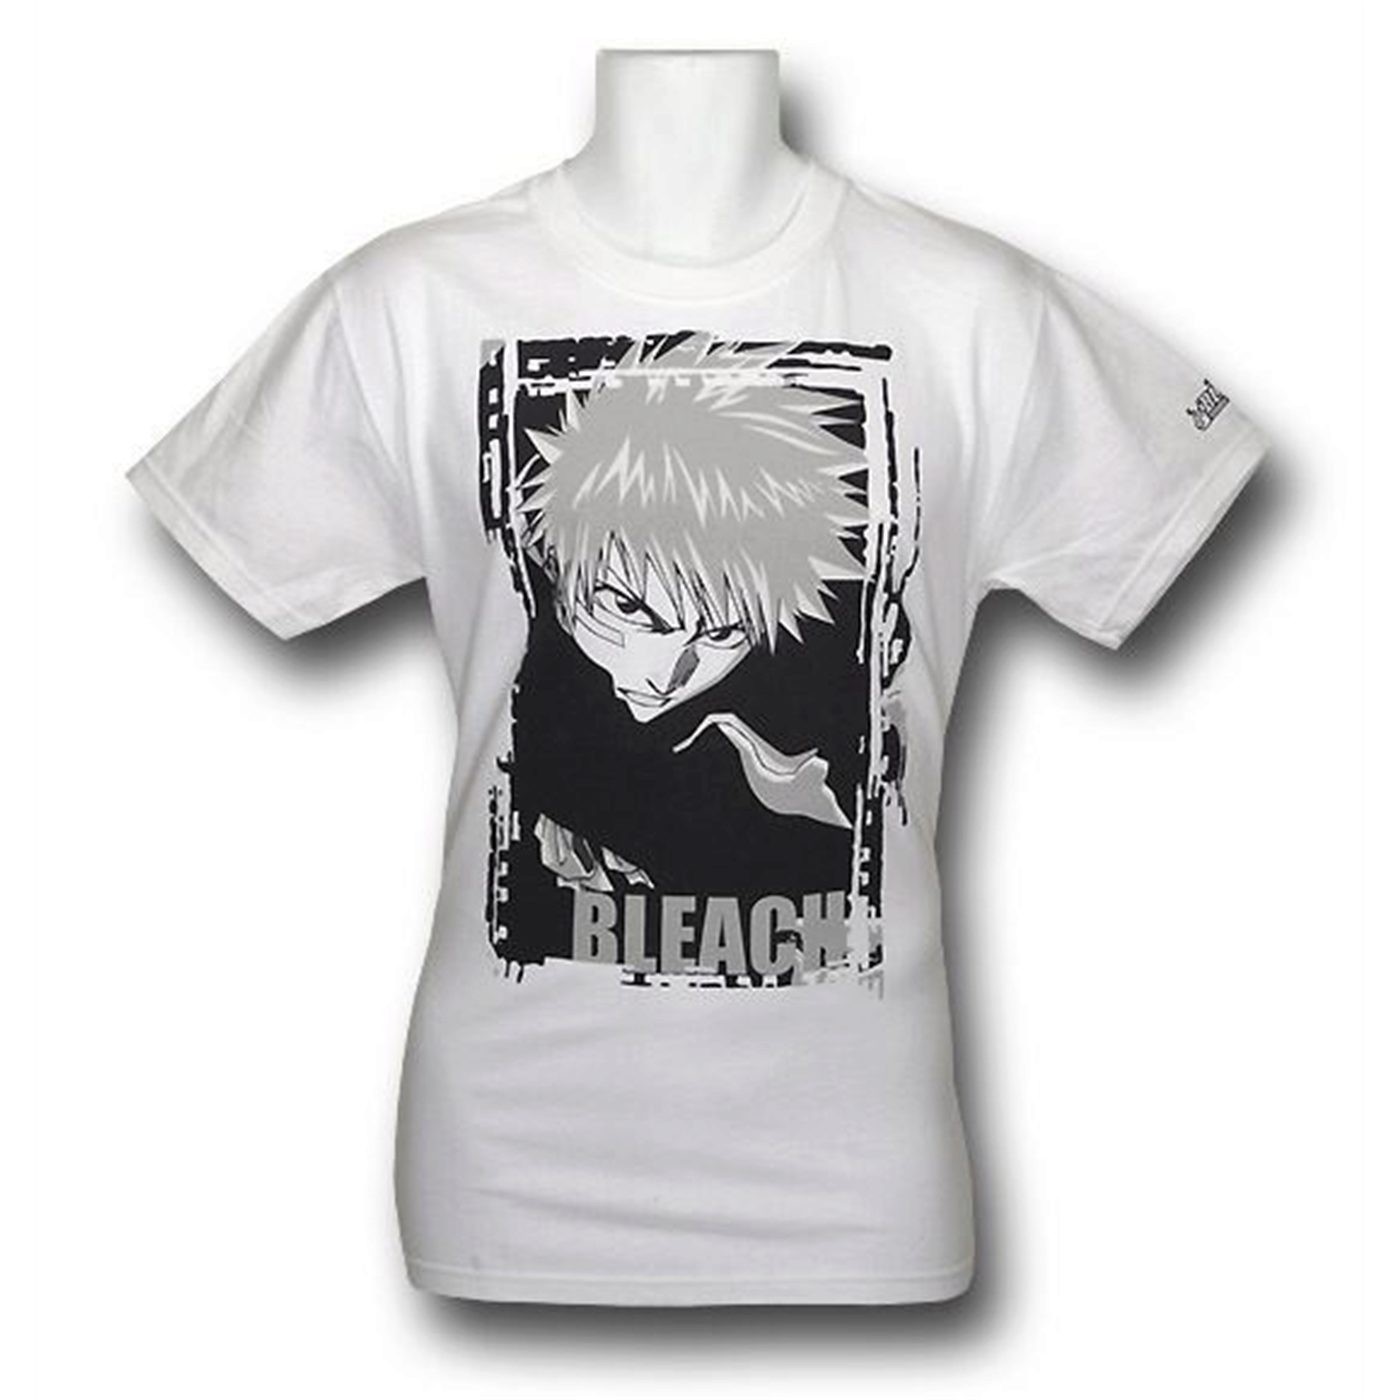 Bleach Anime T-Shirt - B – FairyPocket Wigs